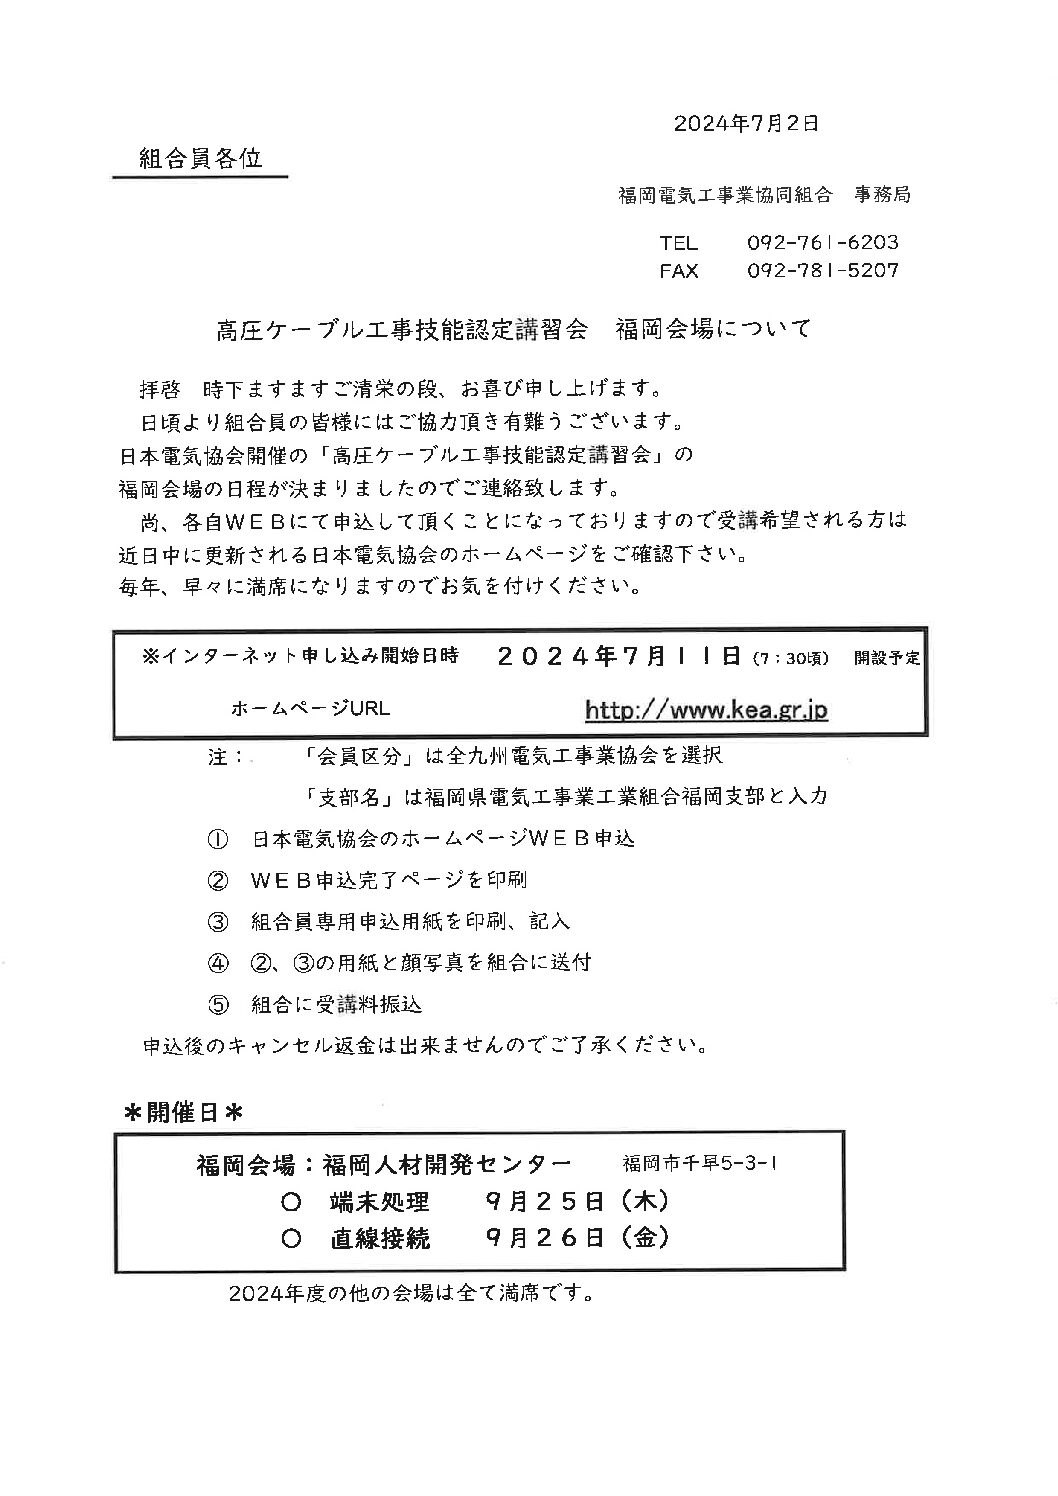 福岡会場での高圧ケーブル工事技能認定講習会のお申込みのお知らせ